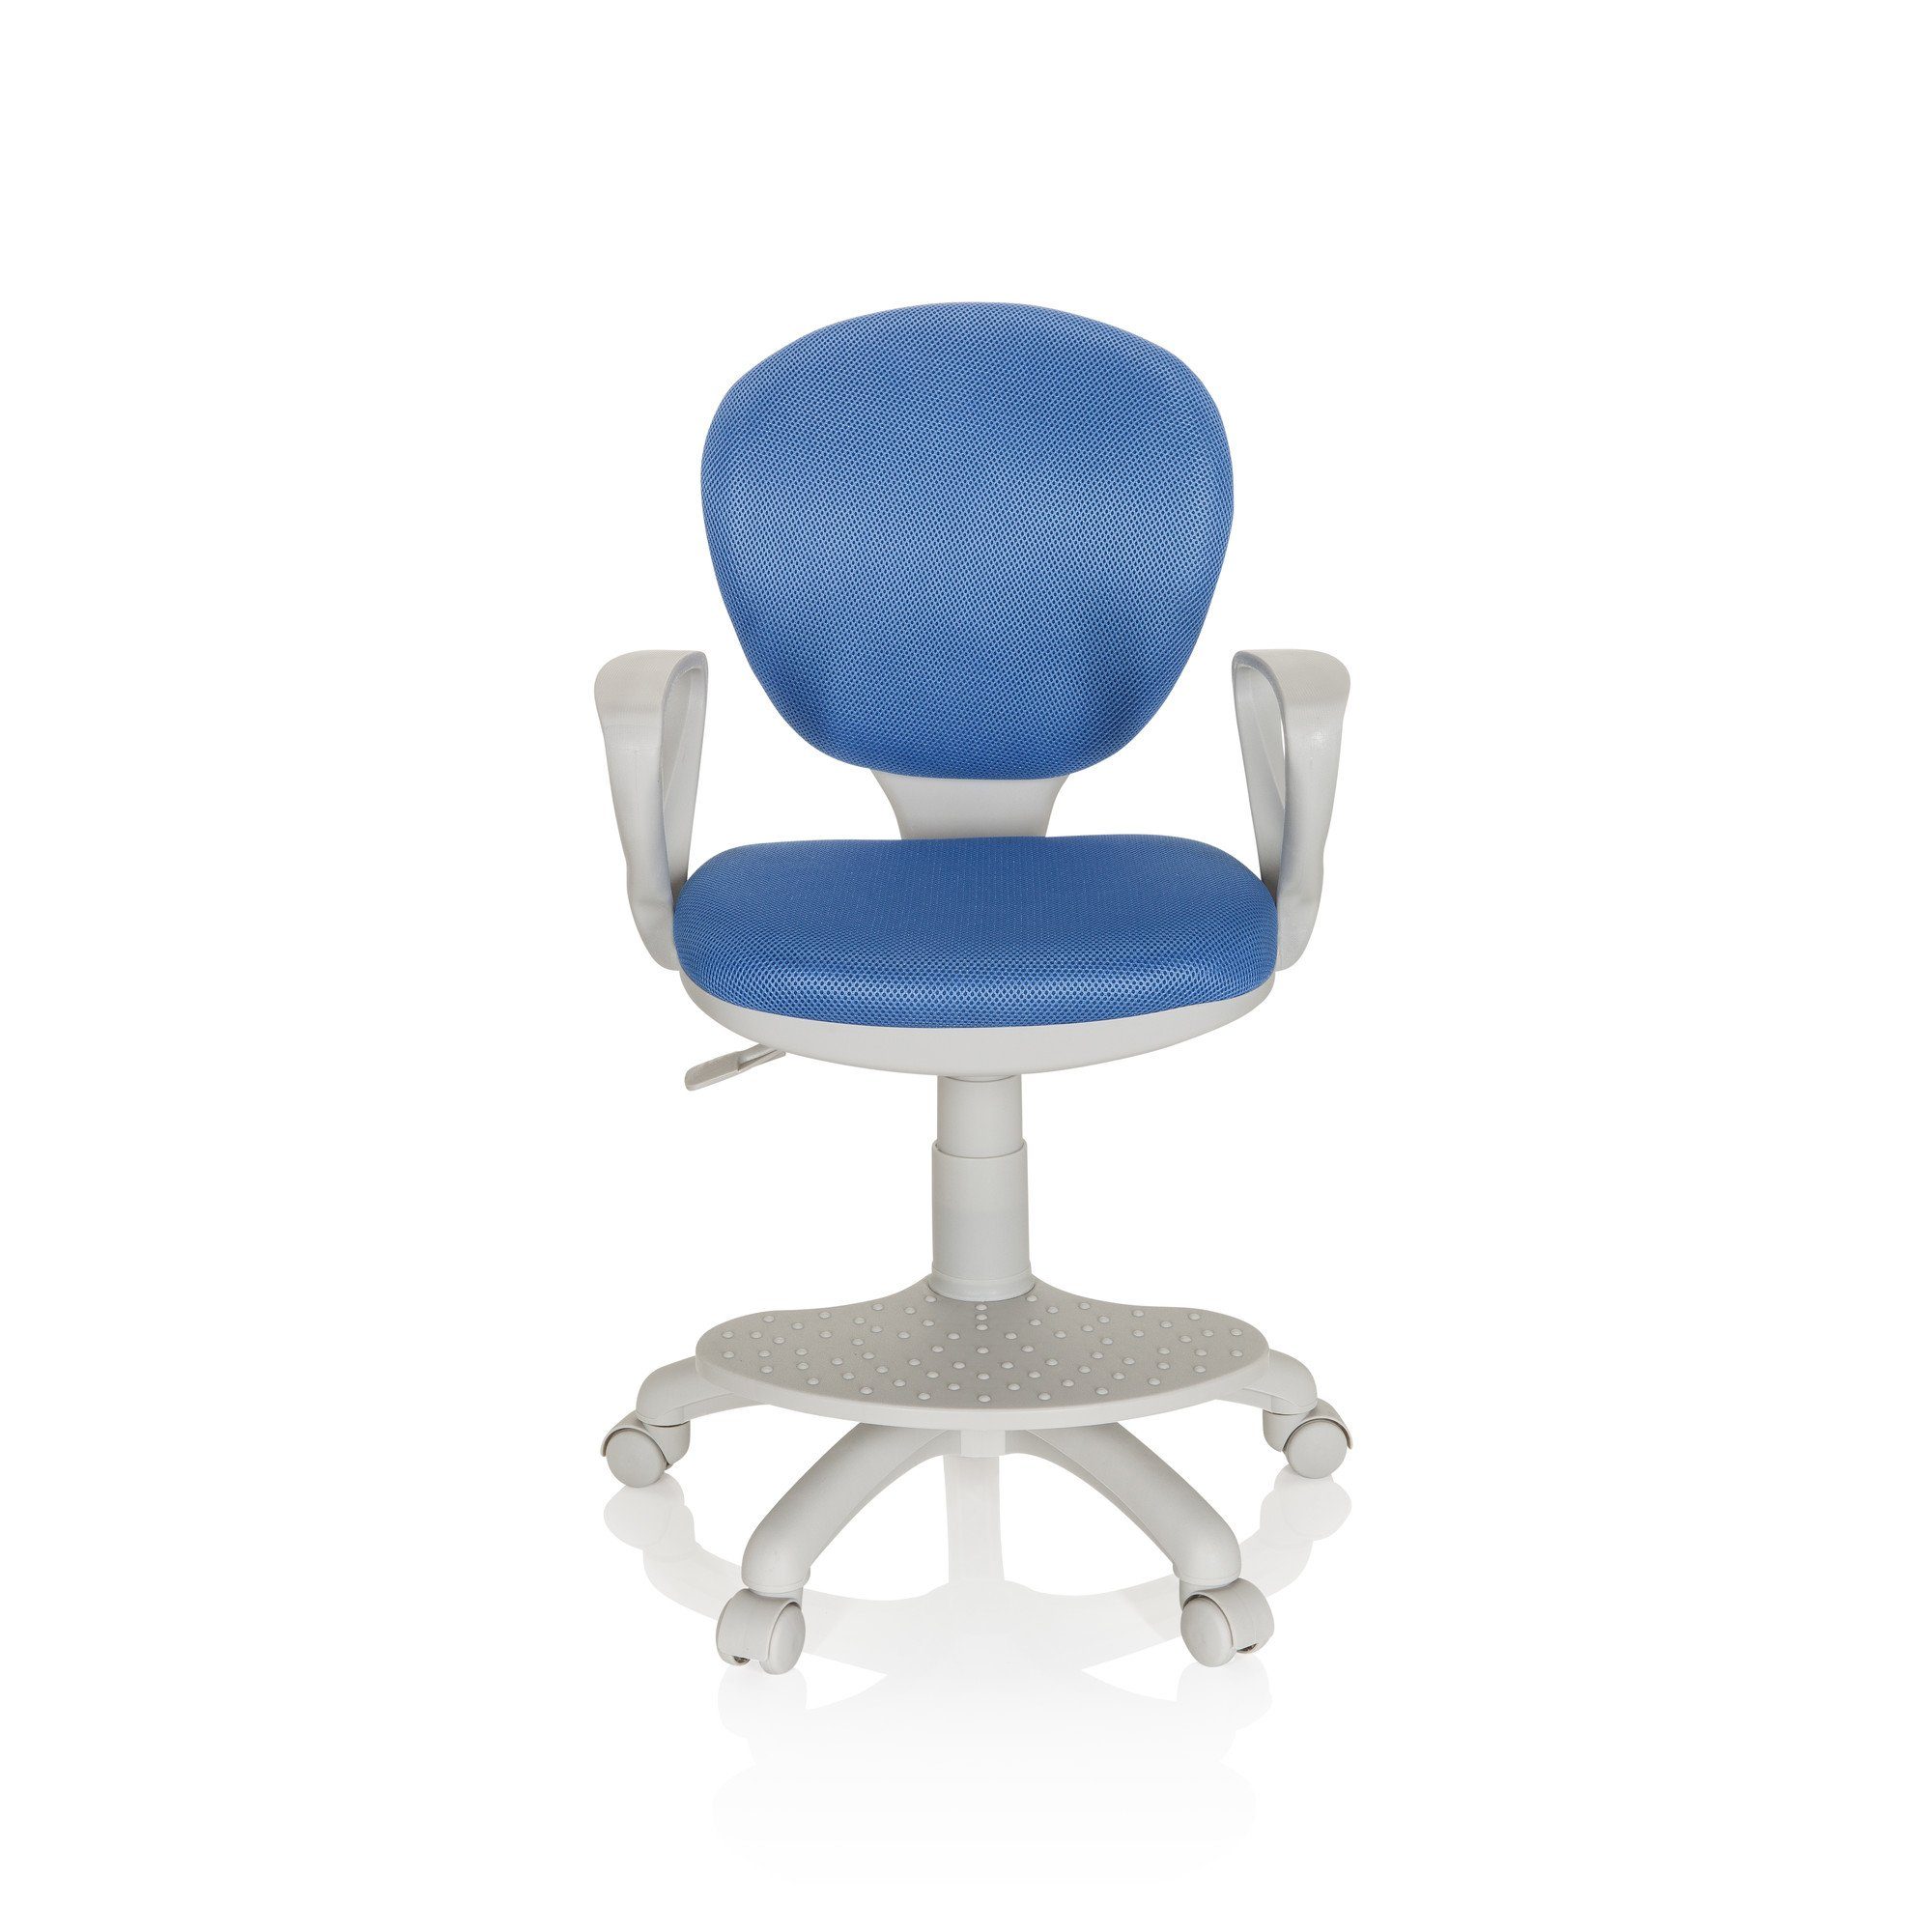 Drehstuhl OFFICE hjh KID Kinderdrehstuhl Blau/Grau ergonomisch (1 Stoff G1 St), mit Armlehnen COLOUR mitwachsend,